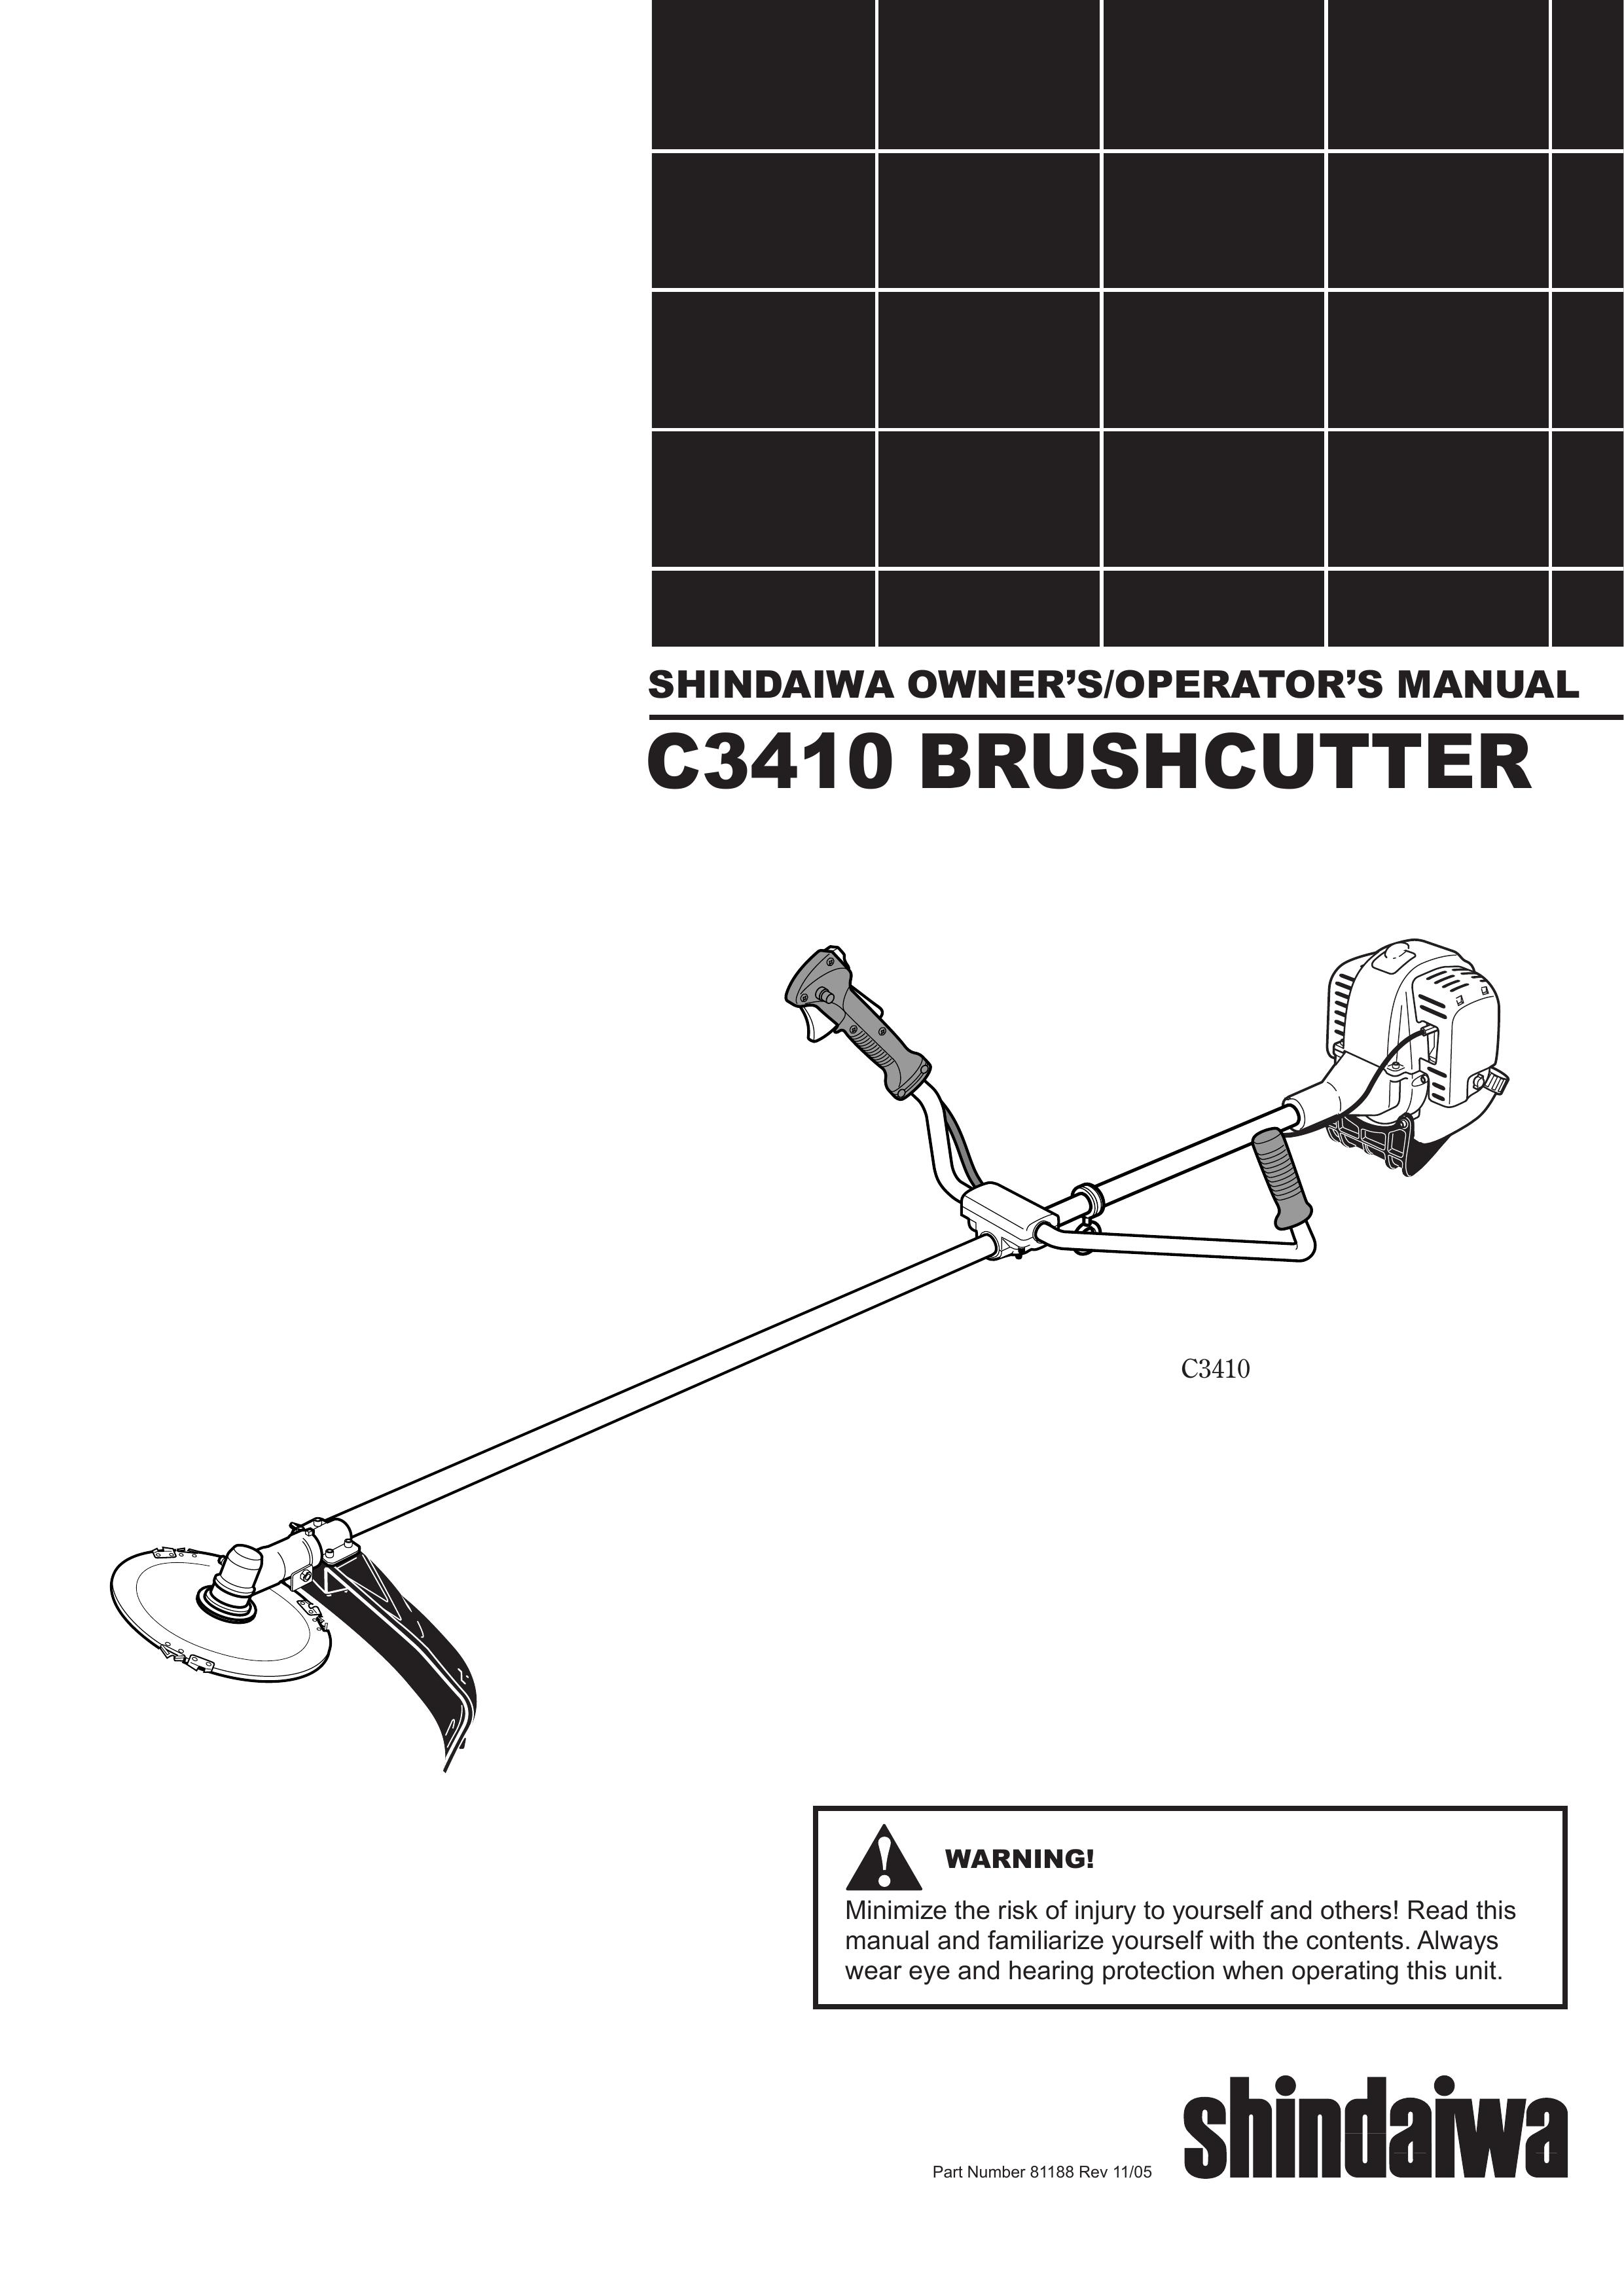 Shindaiwa 81188 Brush Cutter User Manual